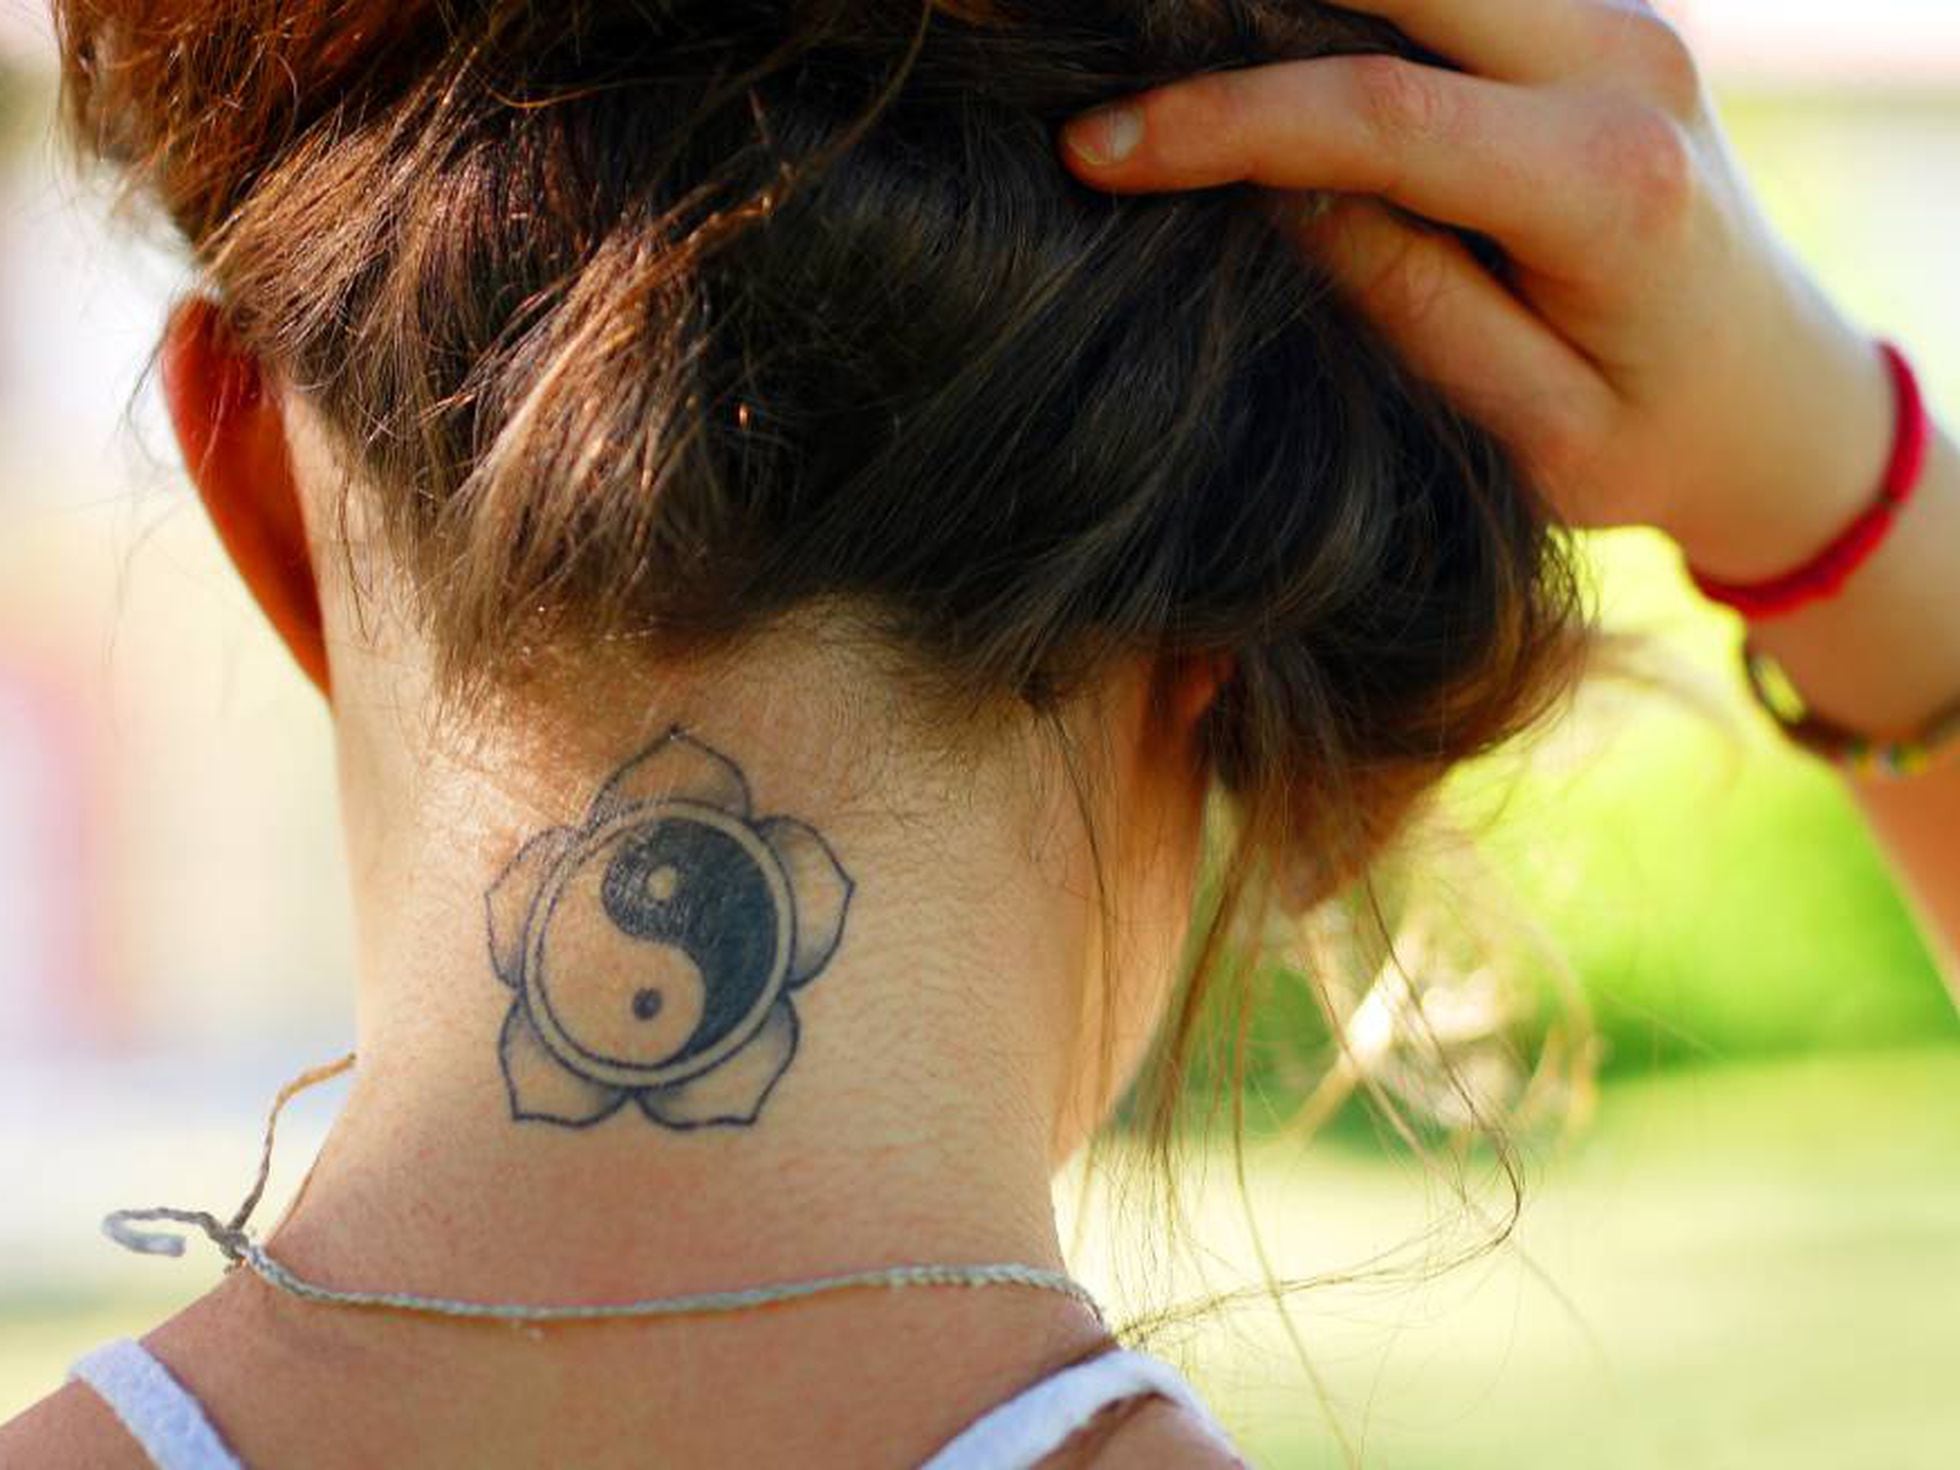 Qué hacer cuando te dicen: “Mamá, papá, quiero hacerme un tatuaje” | Mamas  & Papas | EL PAÍS